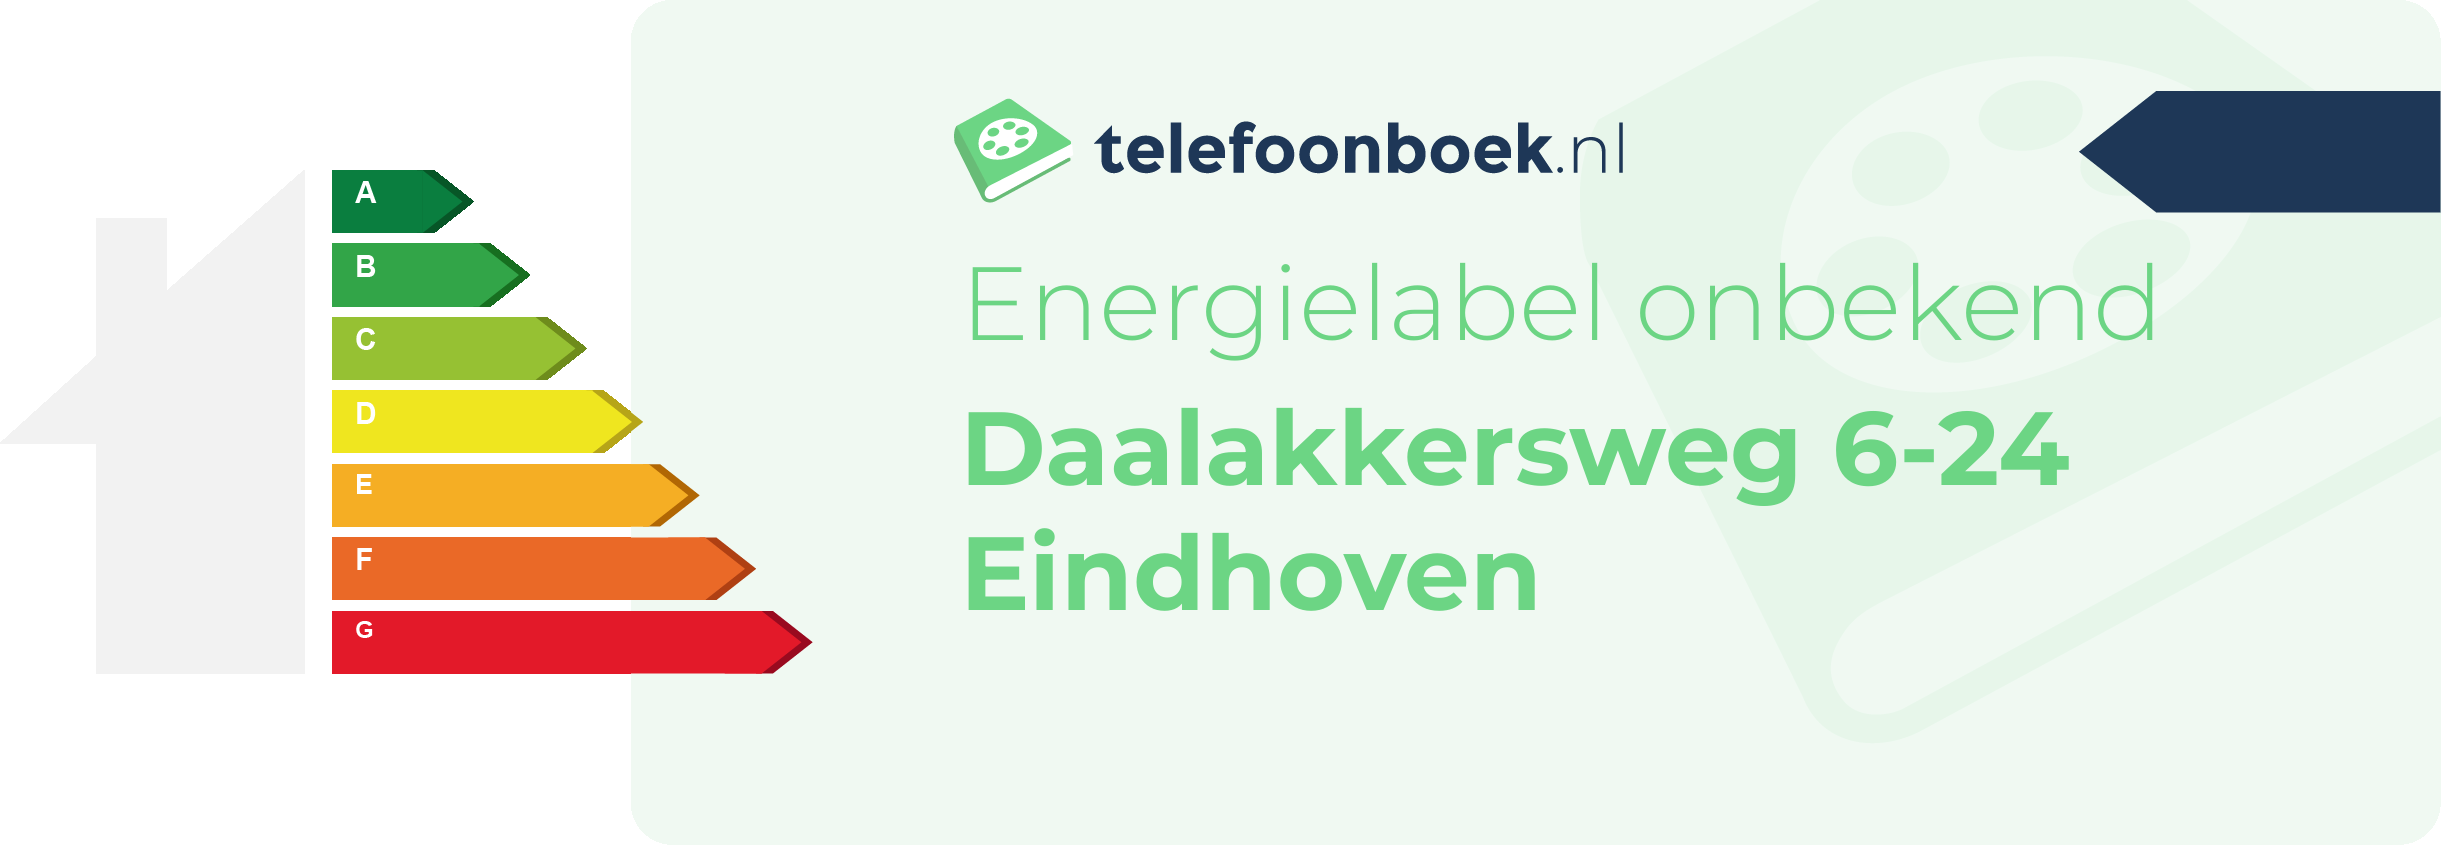 Energielabel Daalakkersweg 6-24 Eindhoven